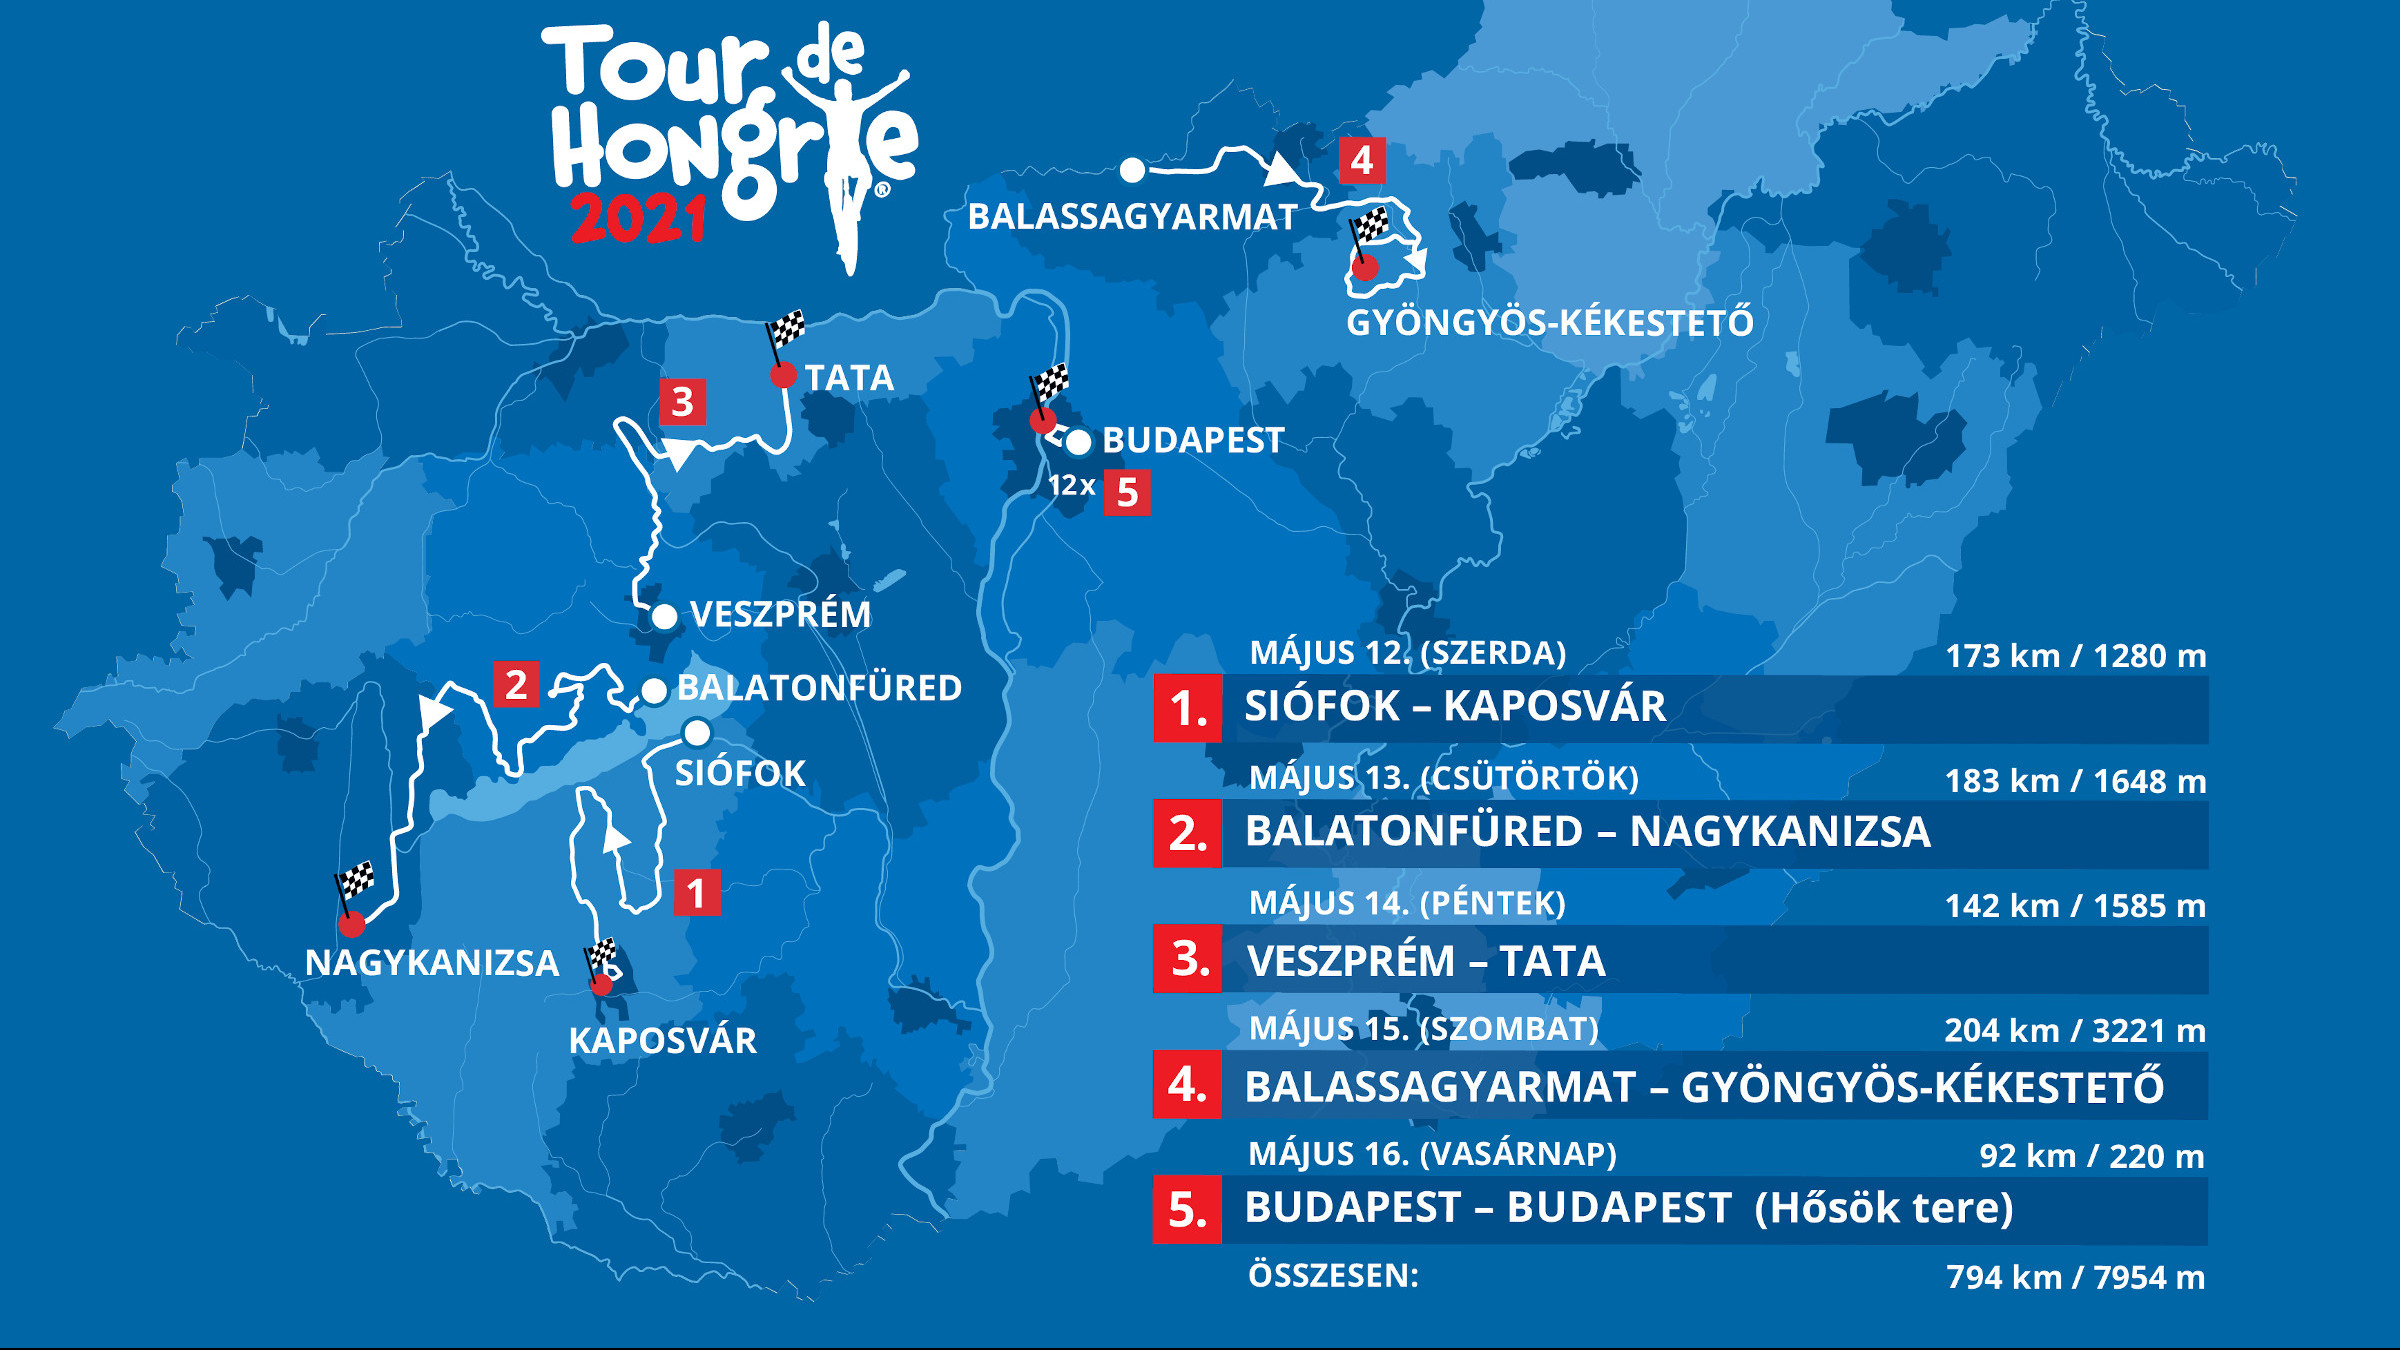 Bemutatták a Tour de Hongrie idei útvonalát